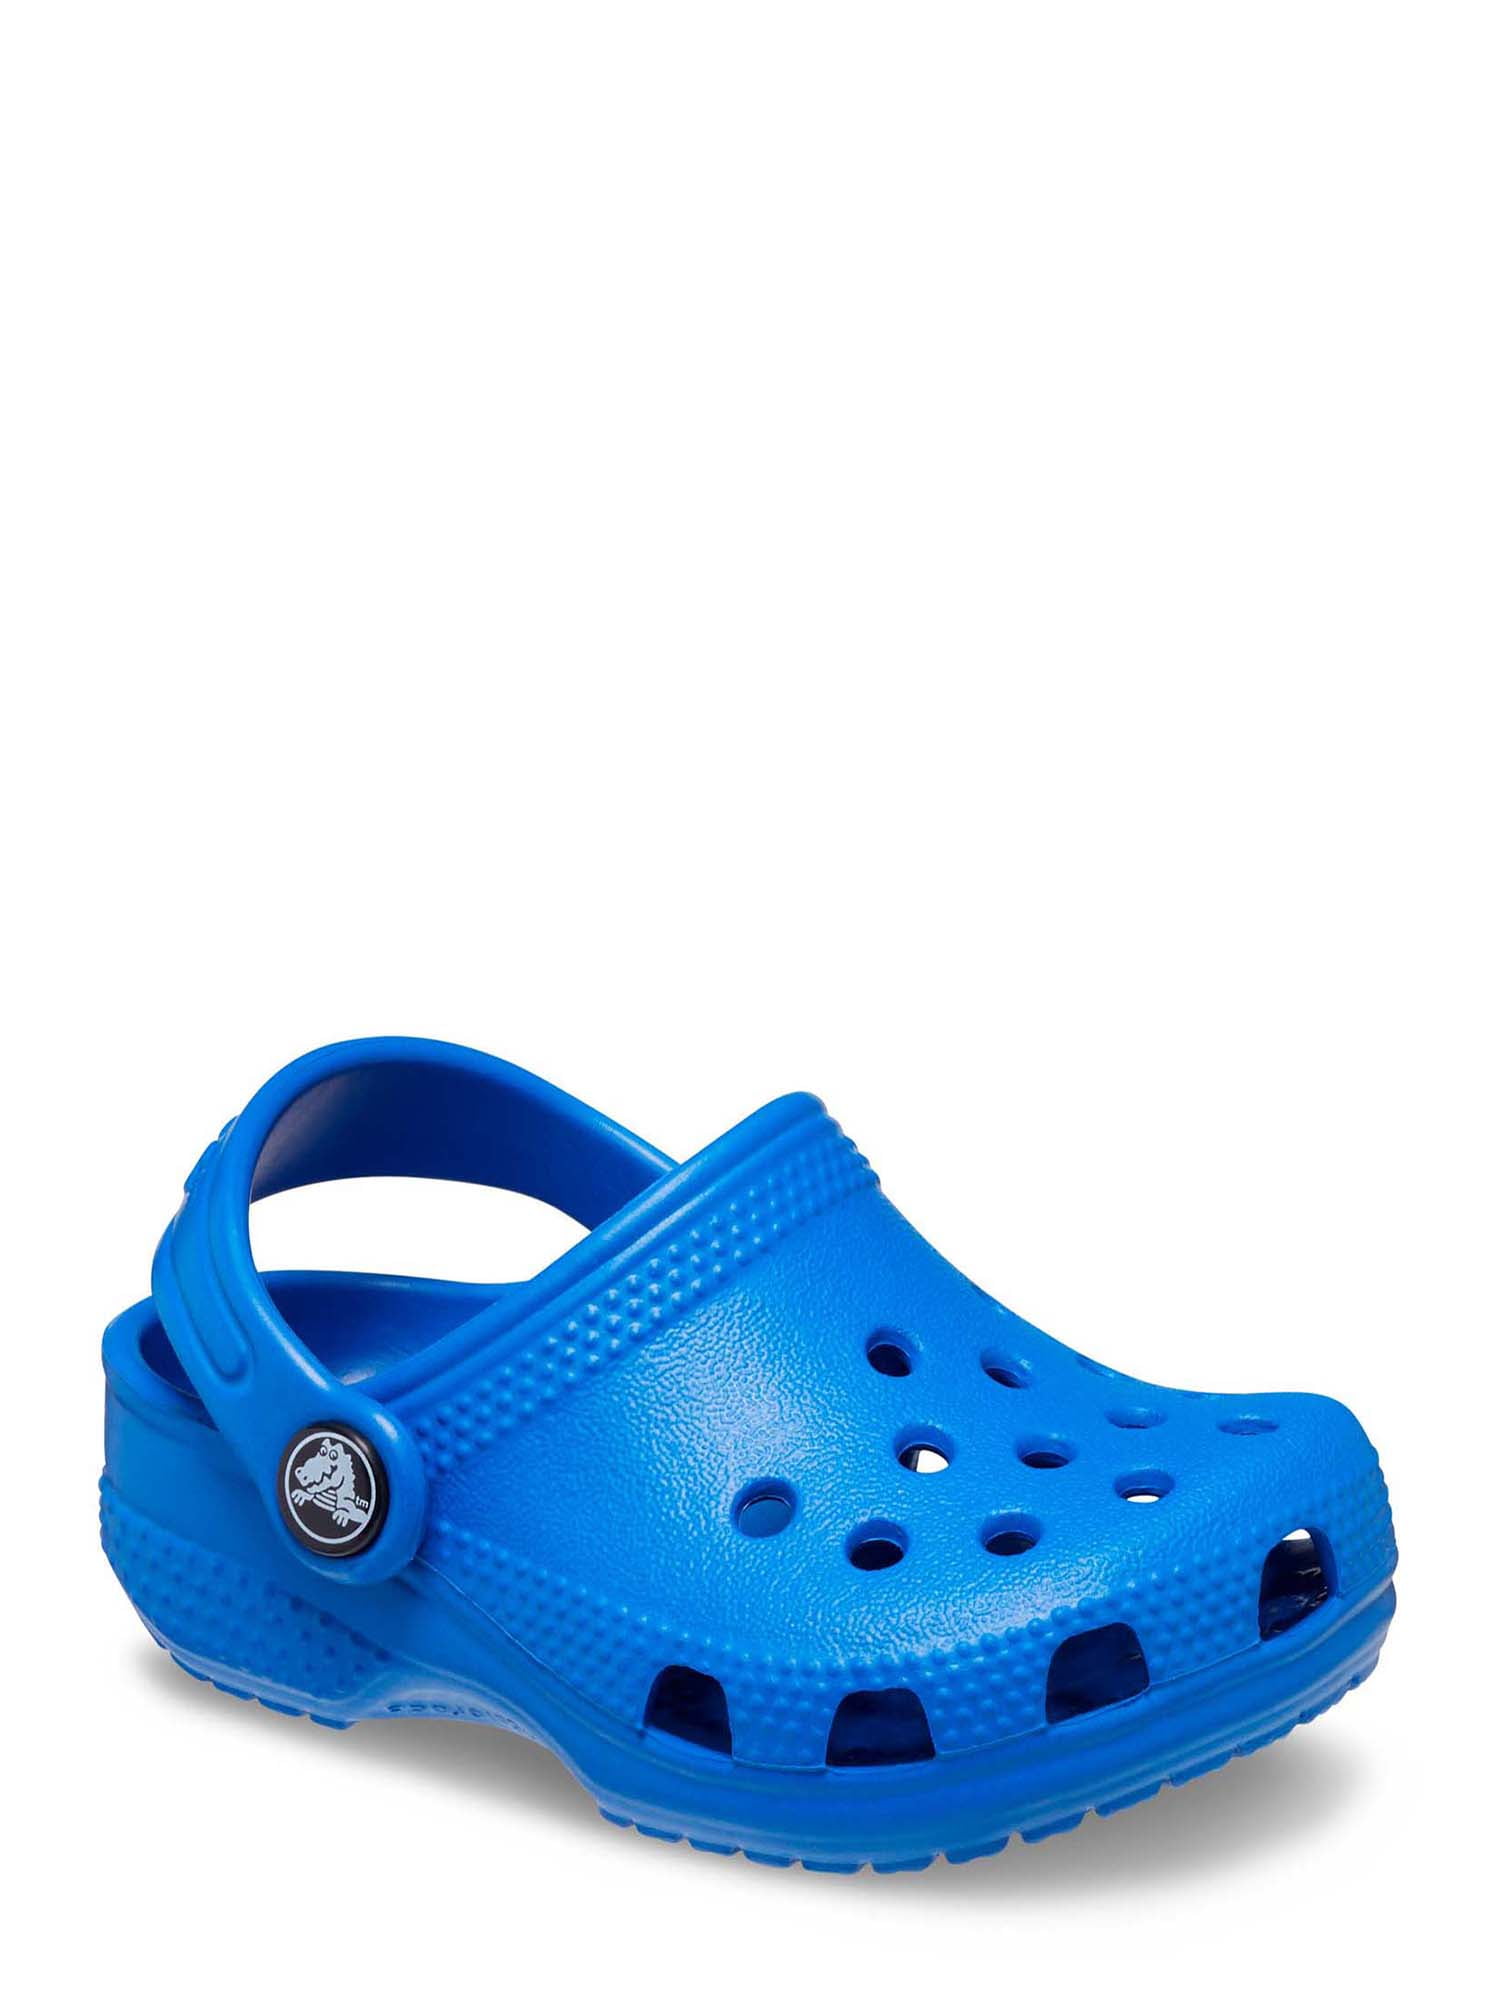 Crocs Baby Classic Clog, Size C2C3 - Walmart.com